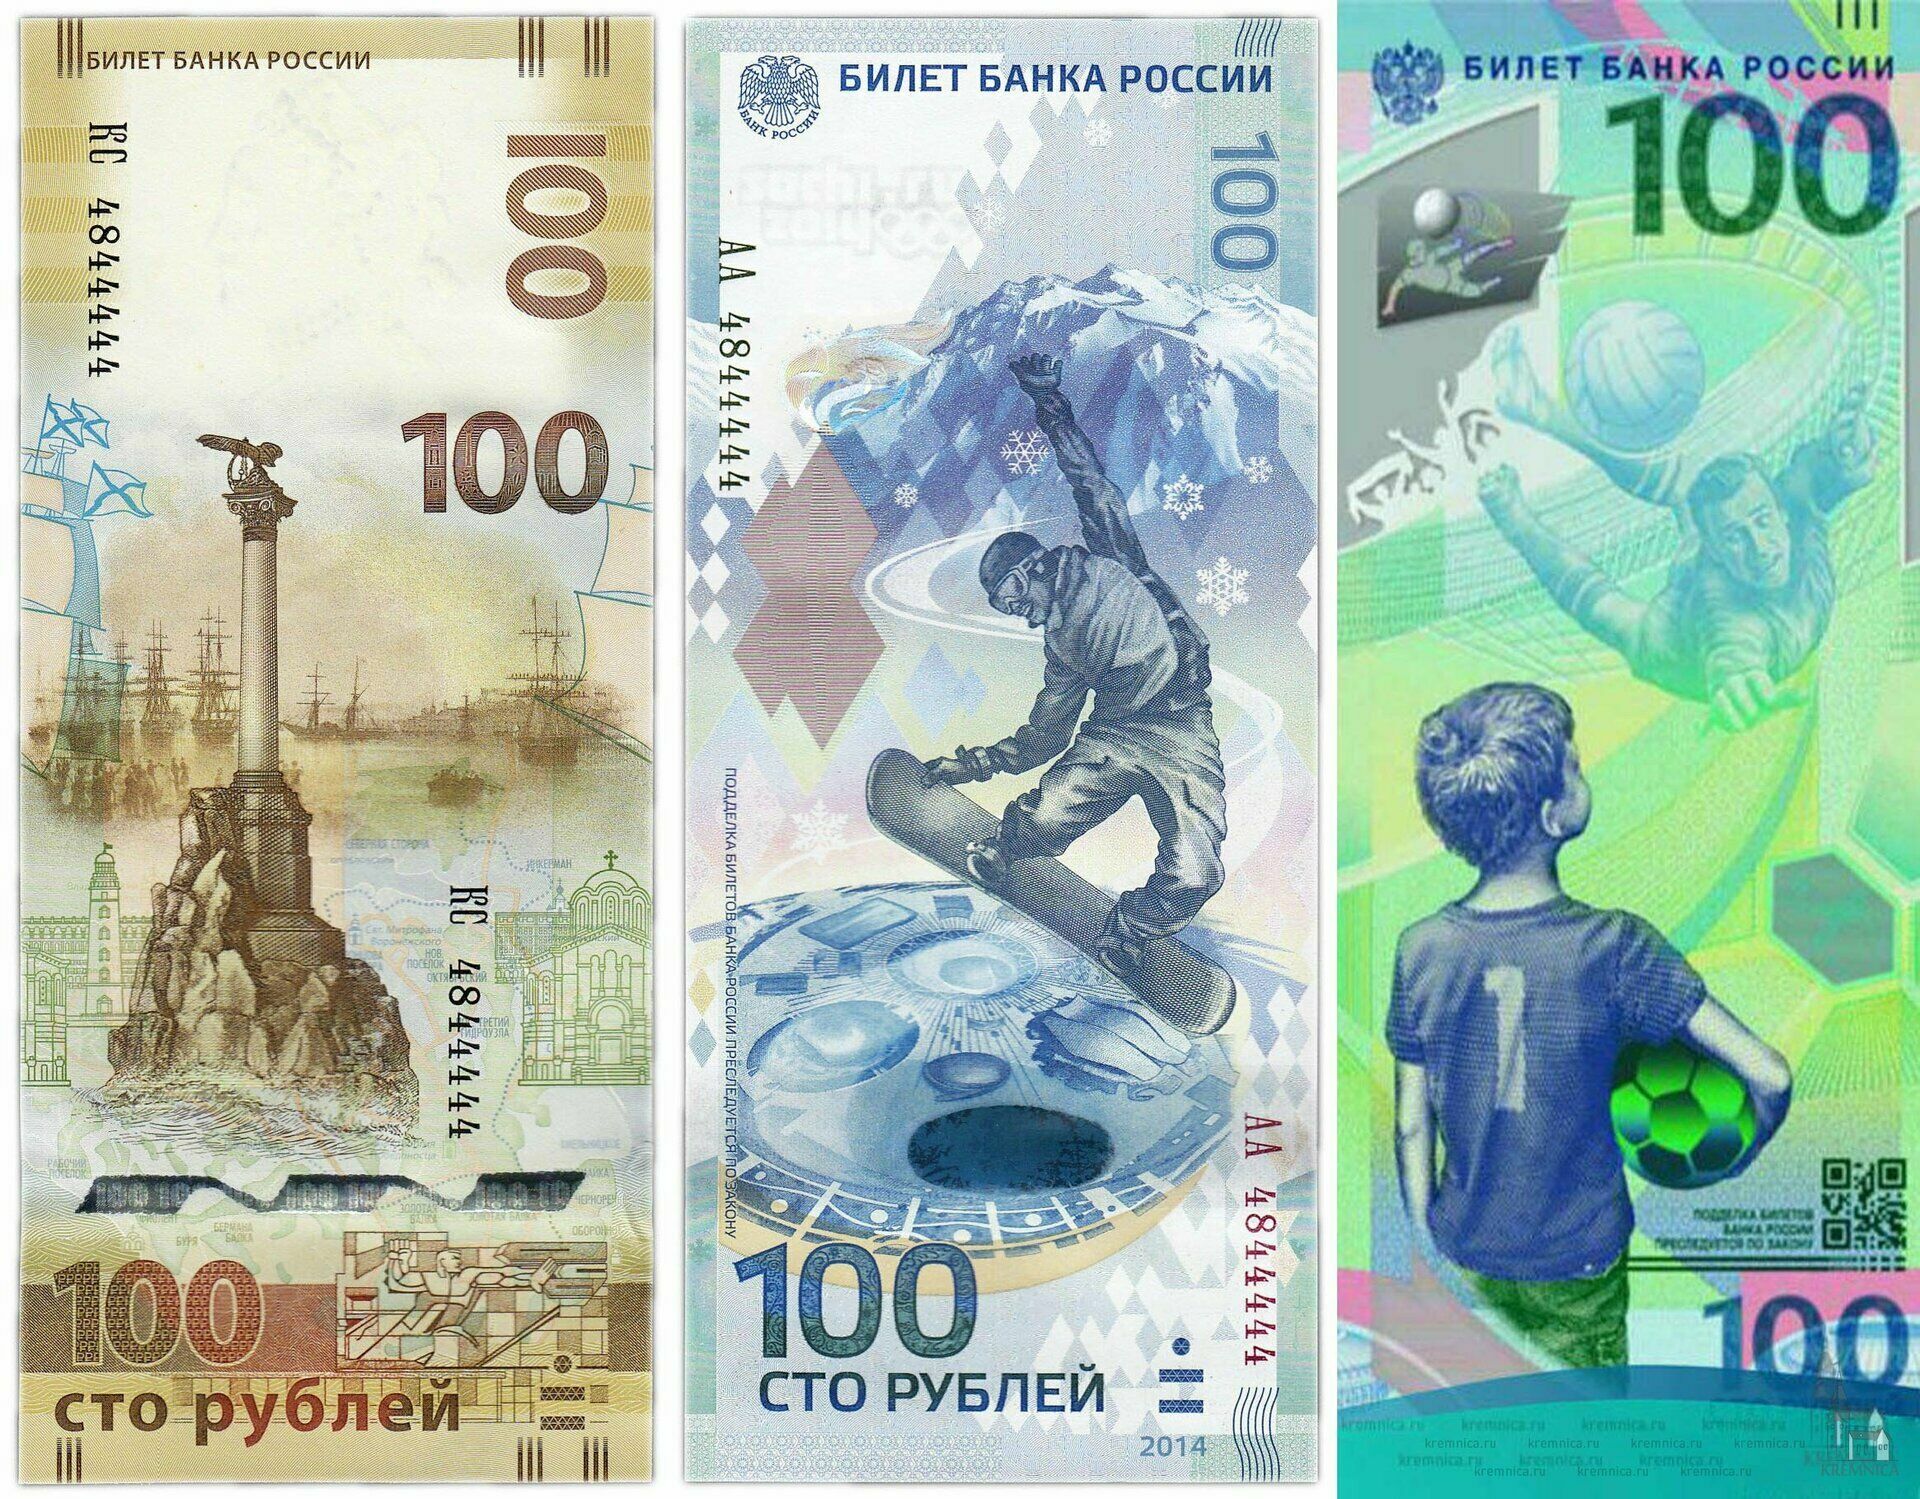 Российская купюра в 100 рублей - одна из самых красивых банкнот в мире